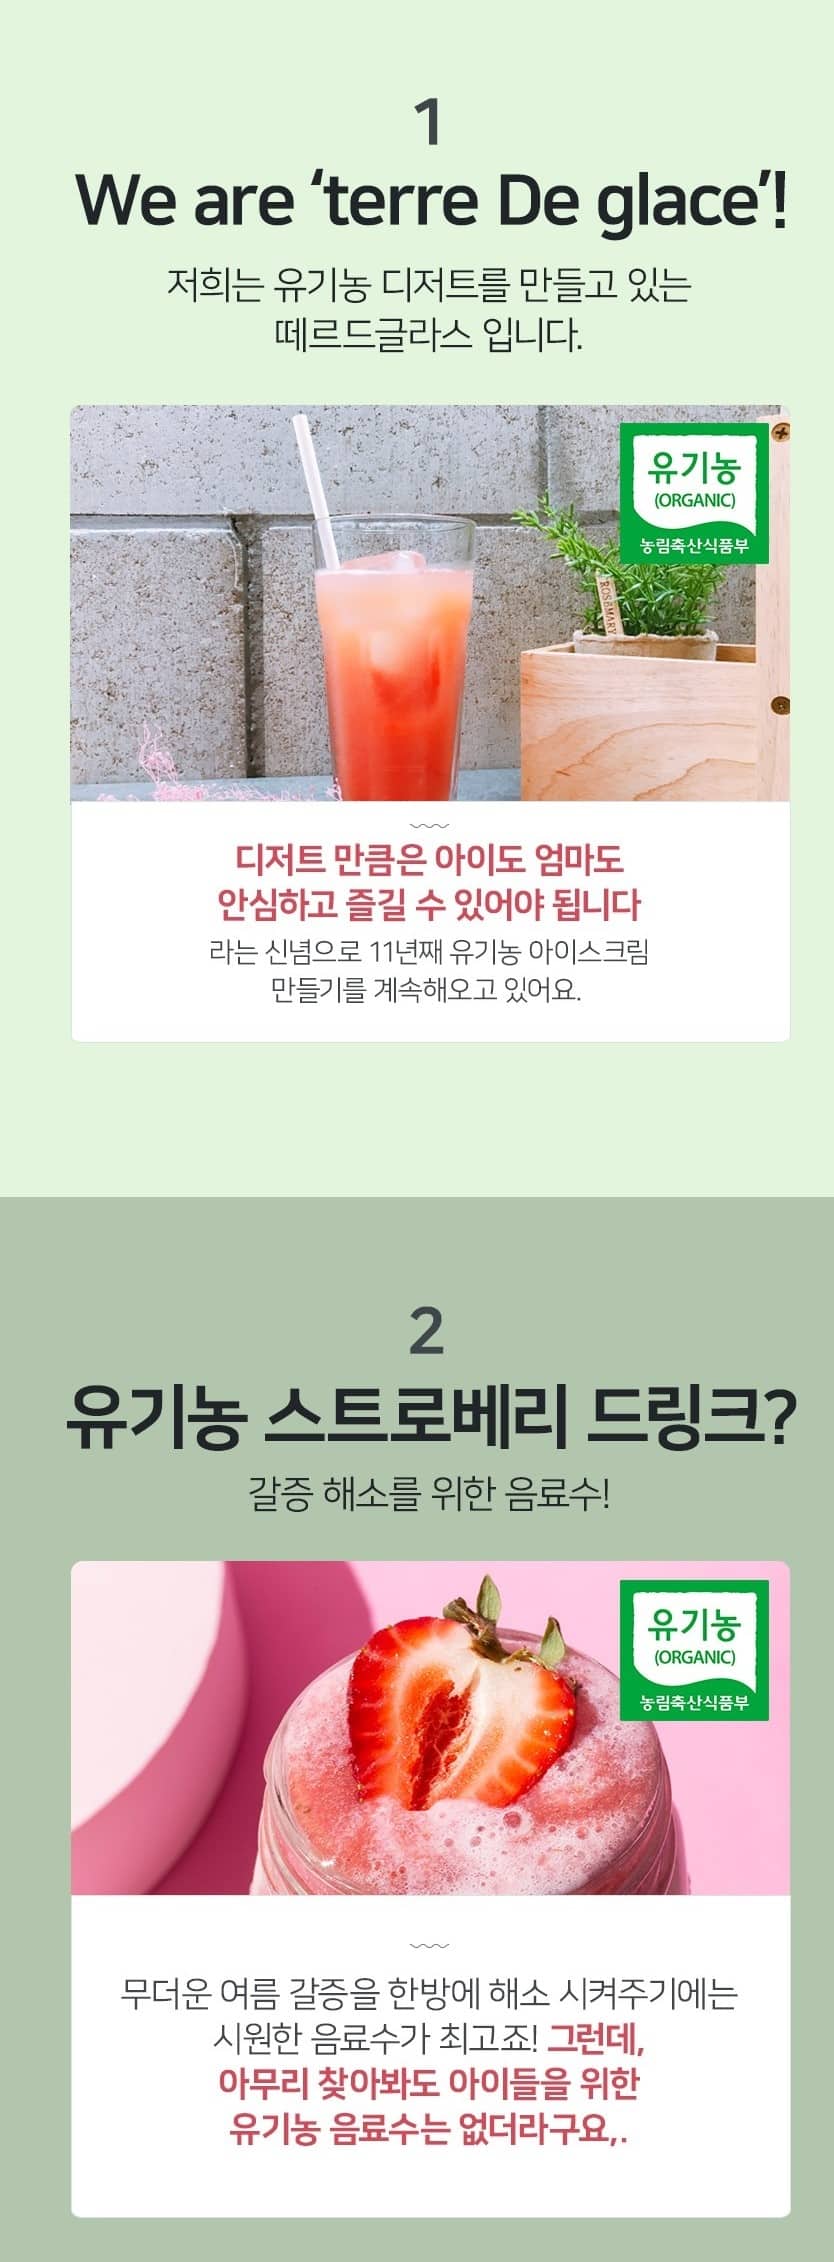 韓國食品-[Terre De Glace]有機士多啤梨汁 220ml